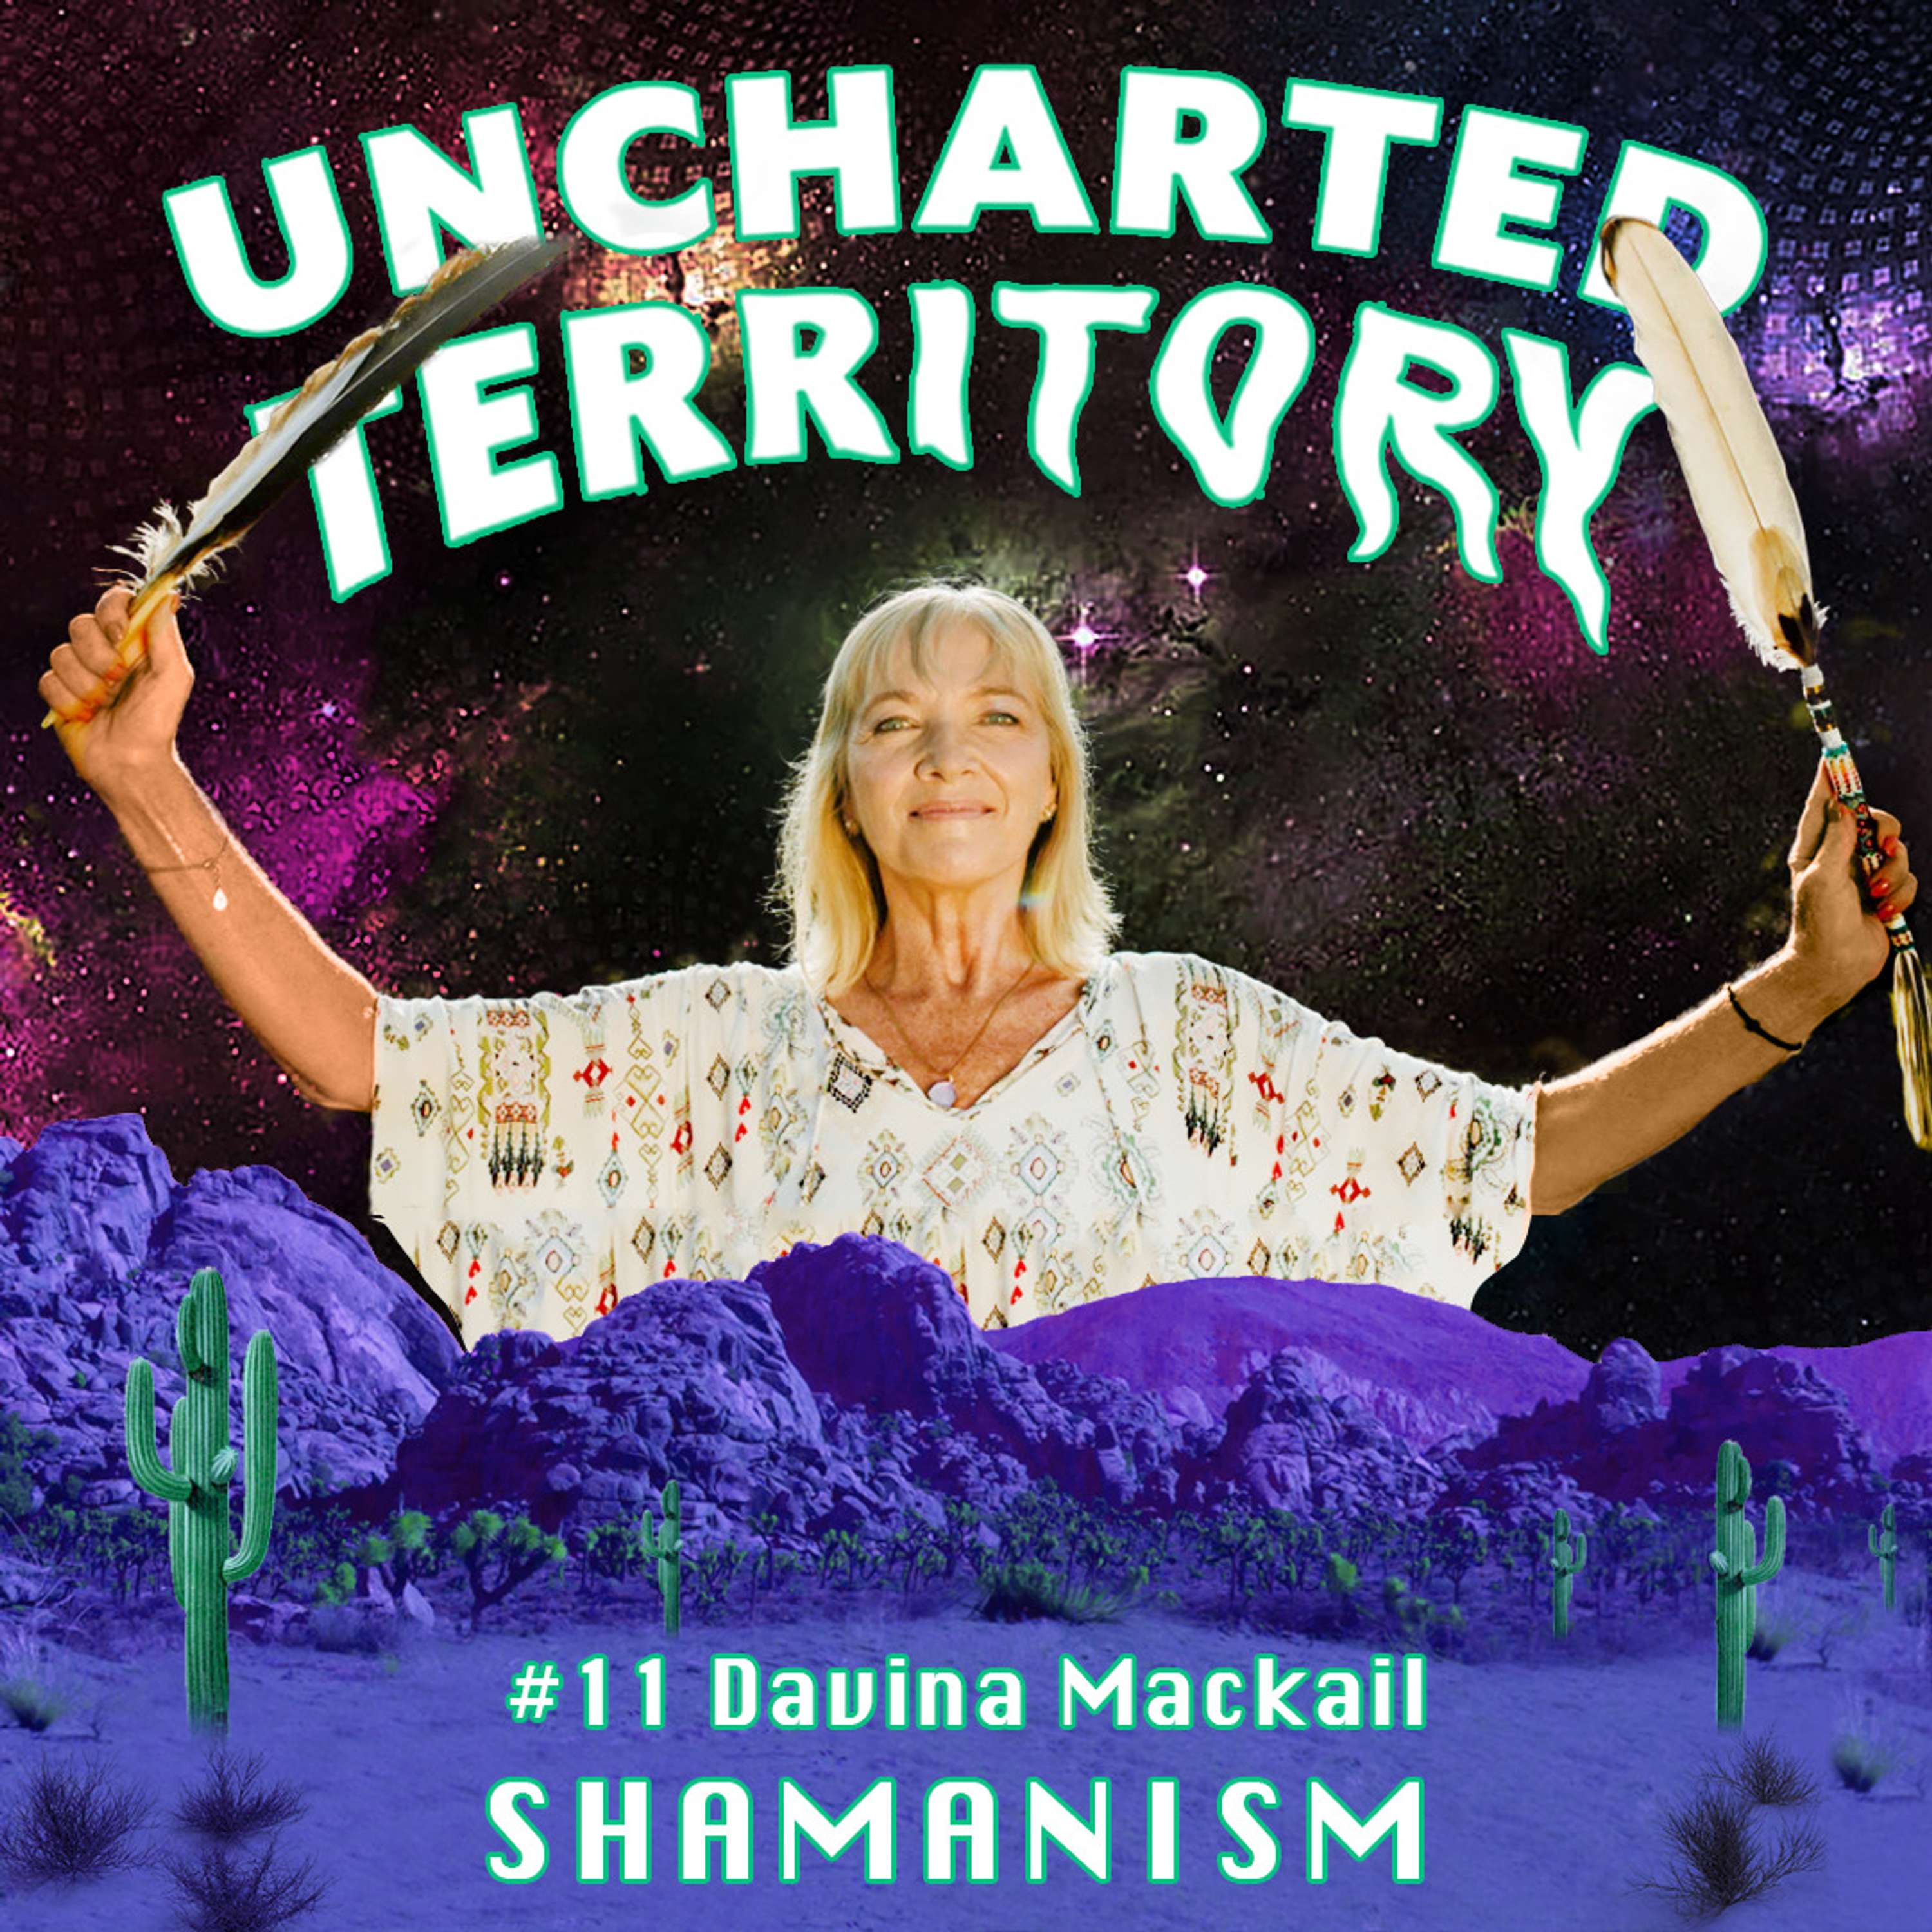 #11 Davina Mackail on shamanism